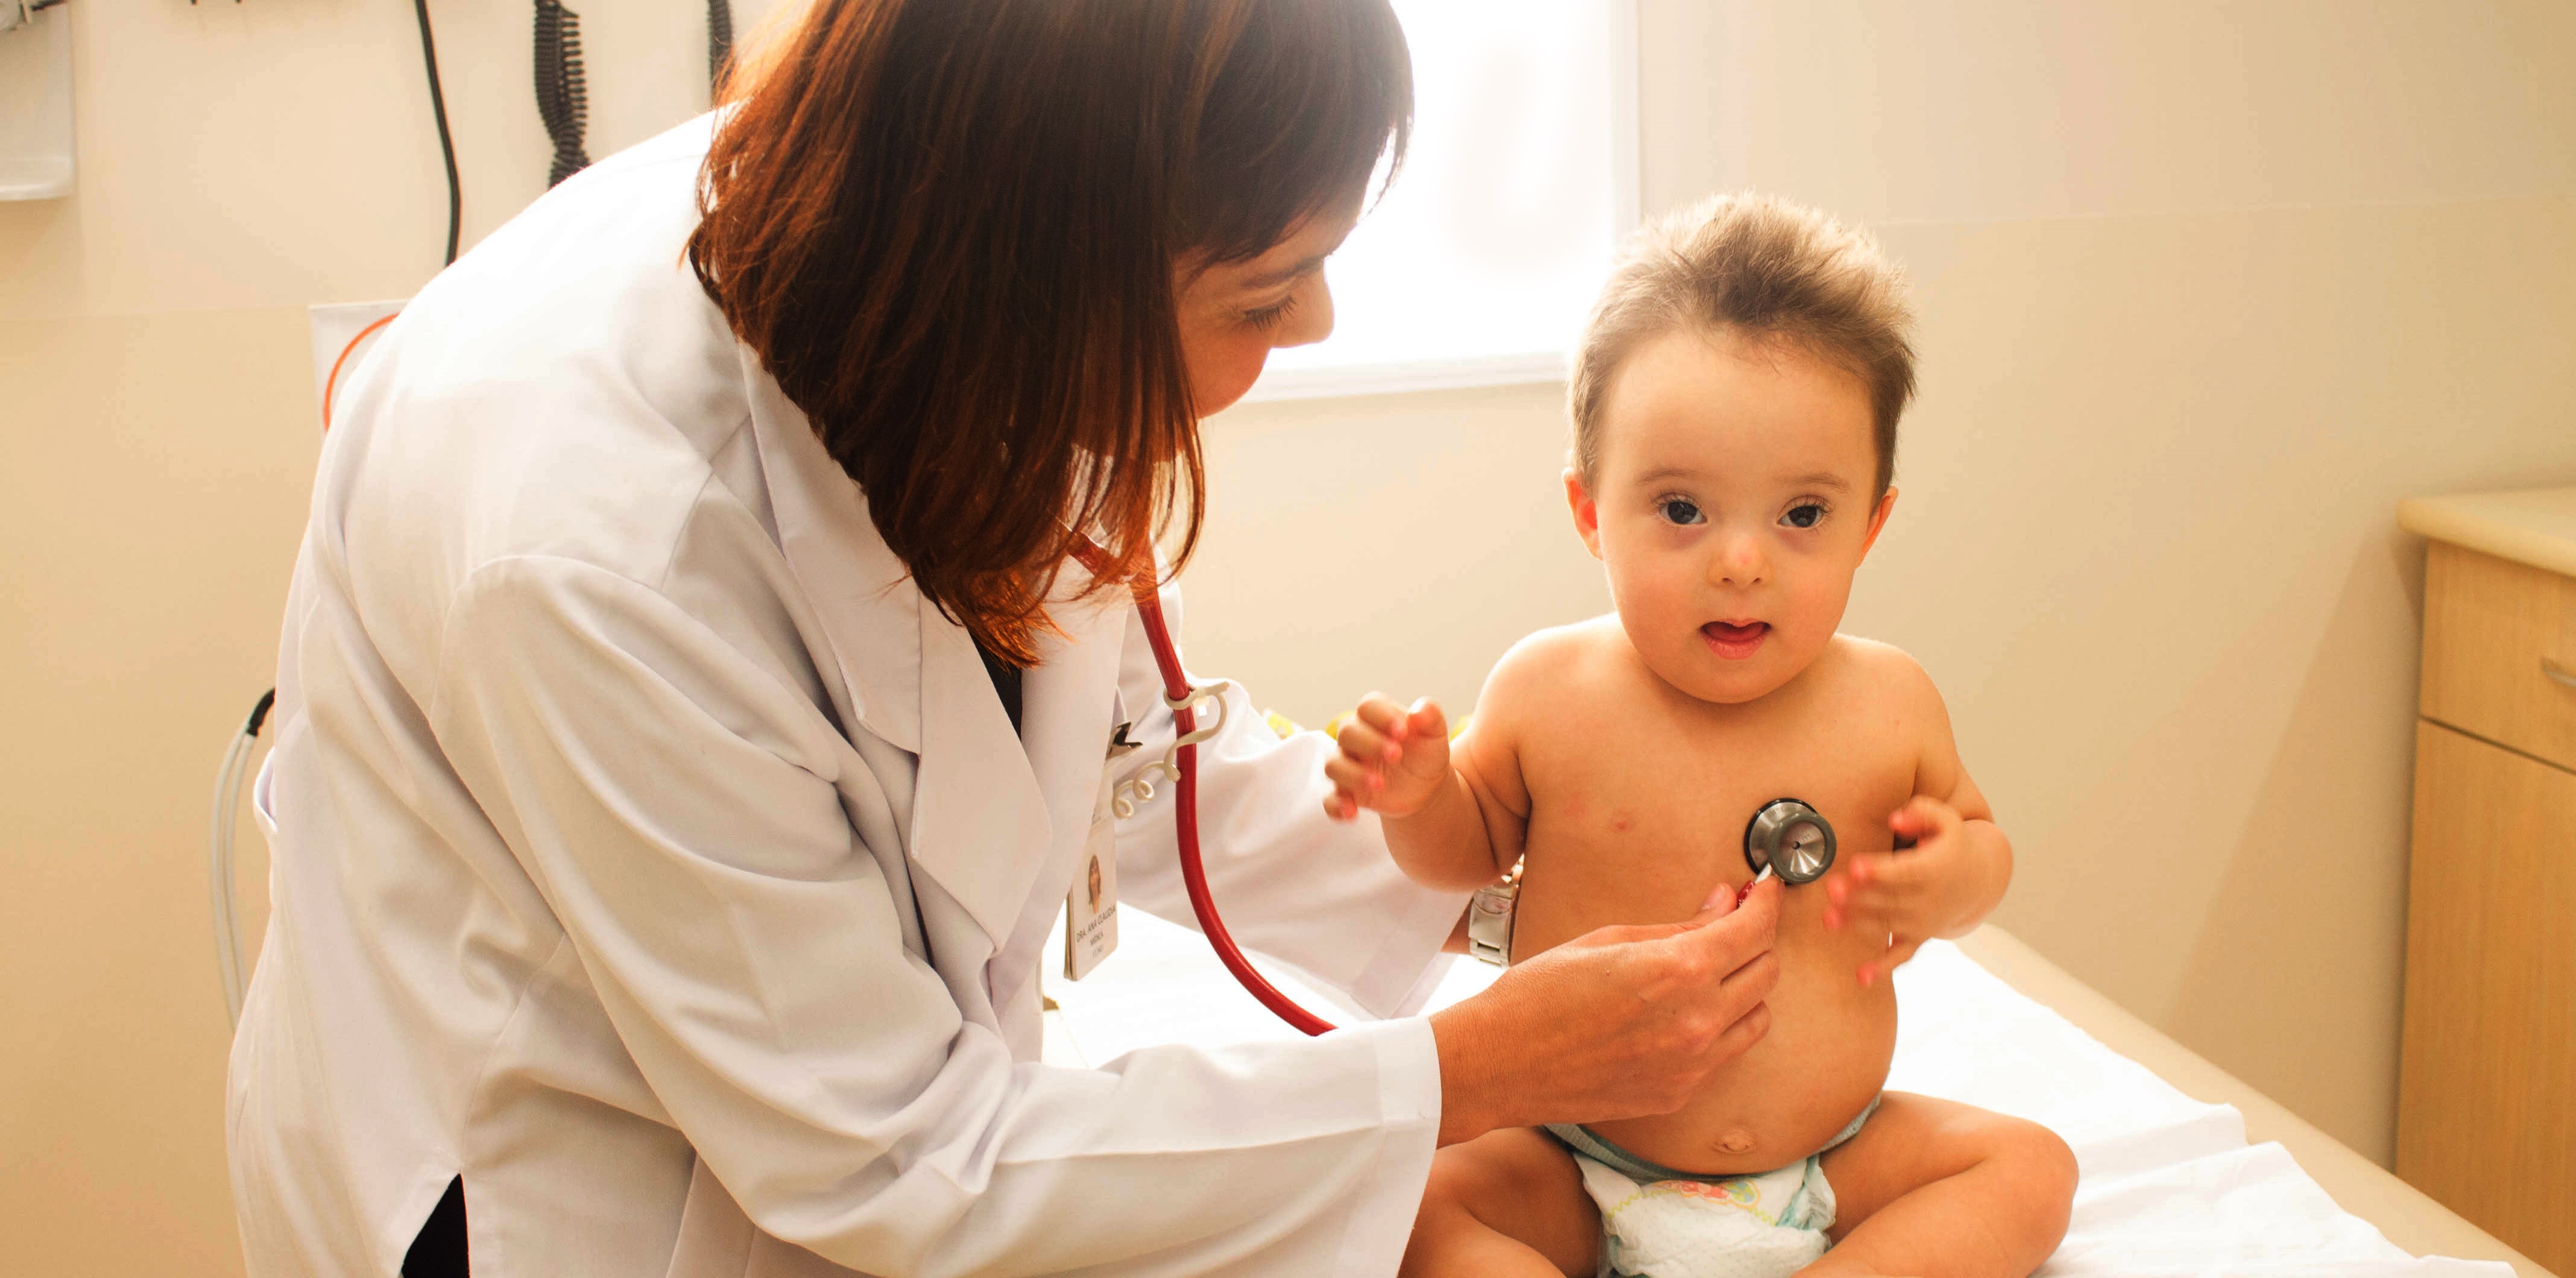 Uma médica pediatra examina um bebê com síndrome de Down.